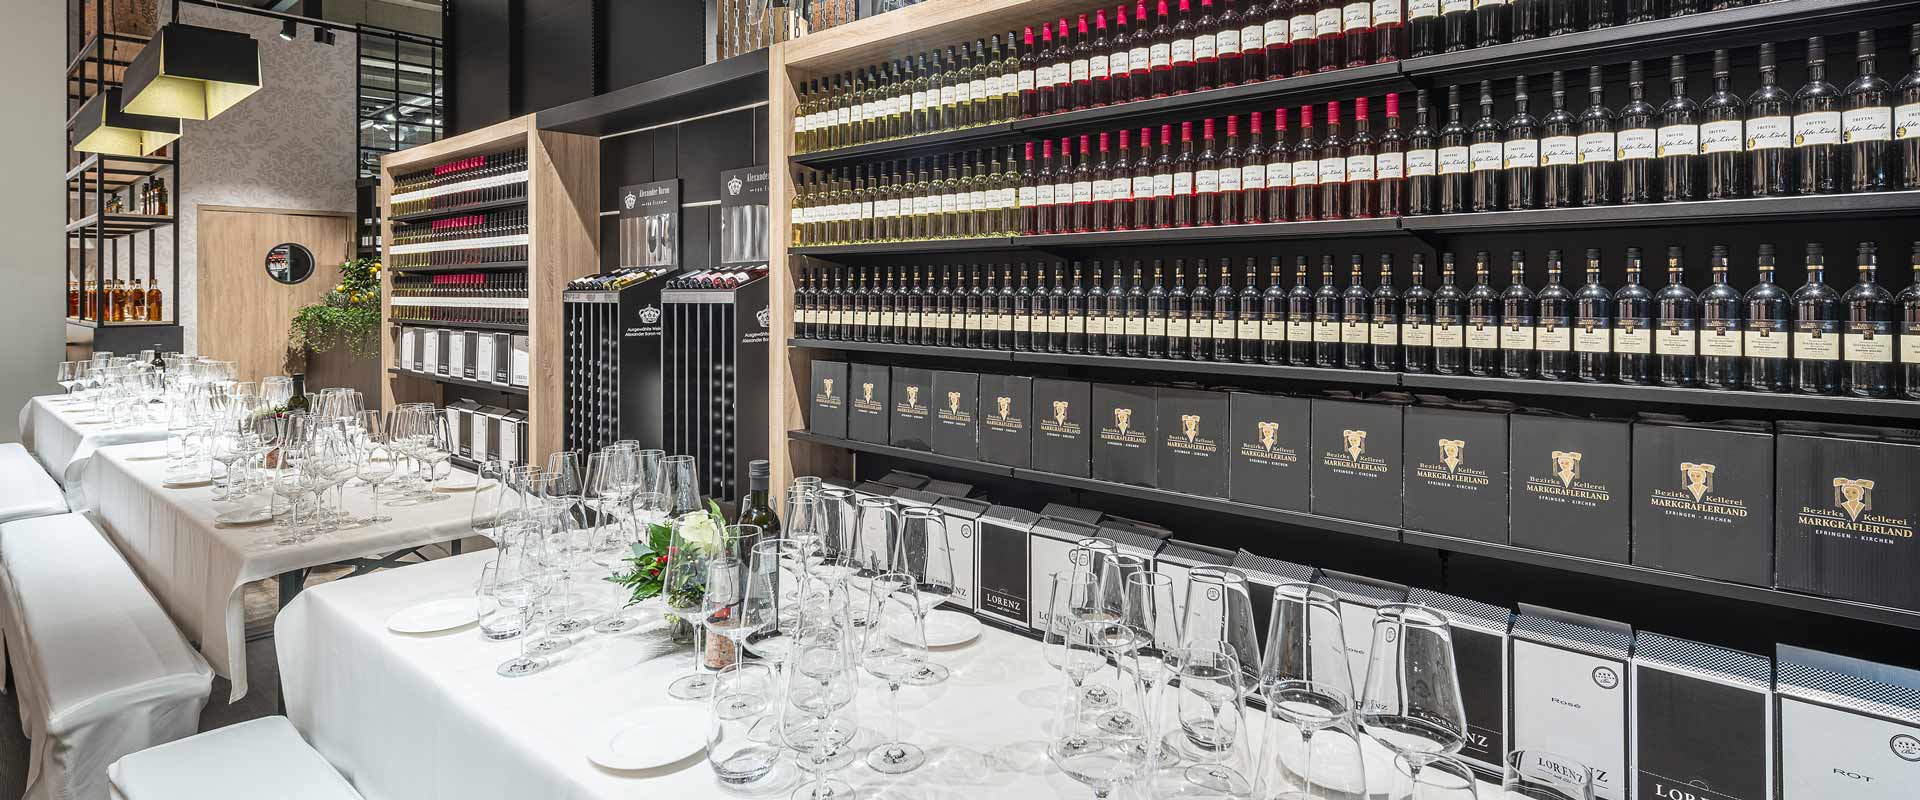 Nakryty stół na dziale z winami w Edeka Süllau w niemieckim Trittau oświetlony za pomocą projektora Kalo.